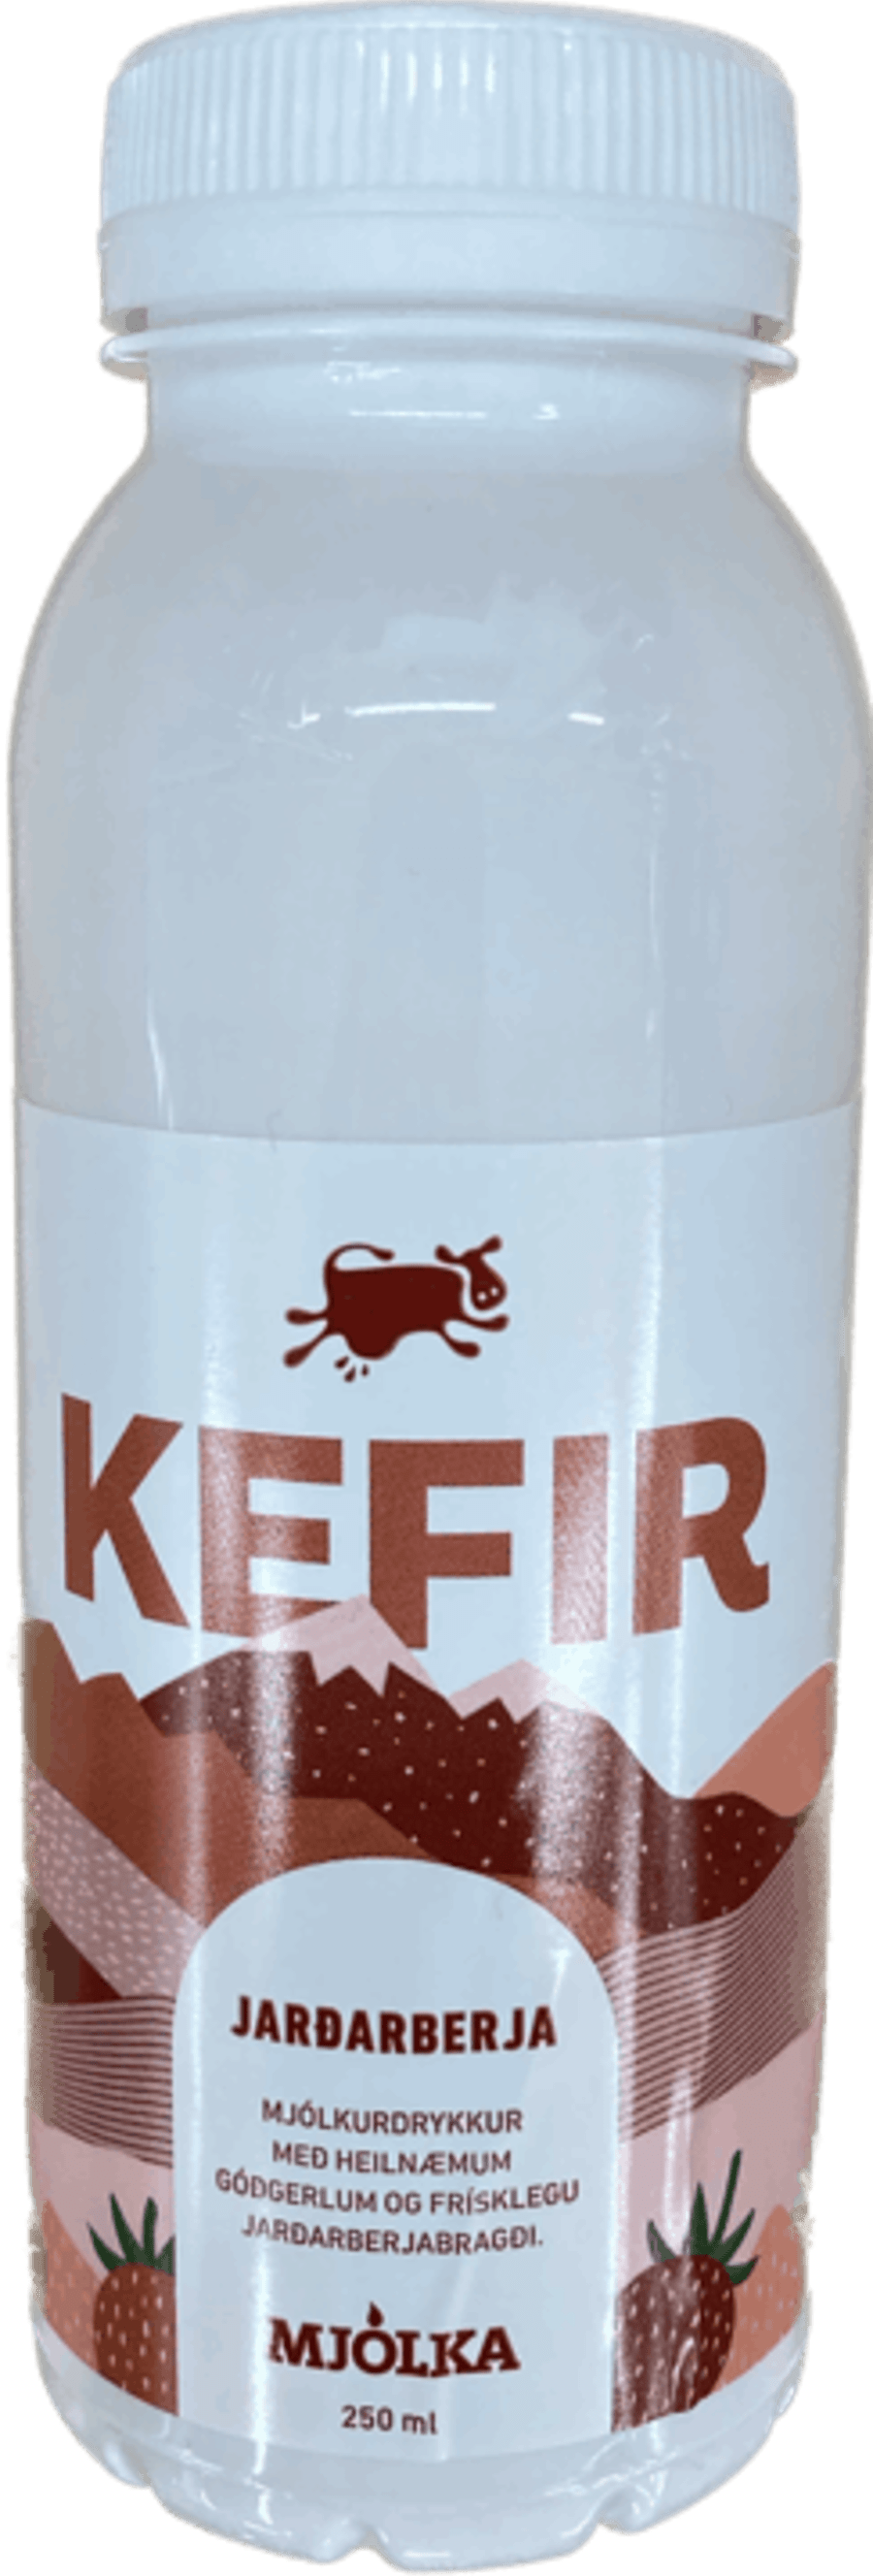 Mjólka kefir jarðarber 250 ml